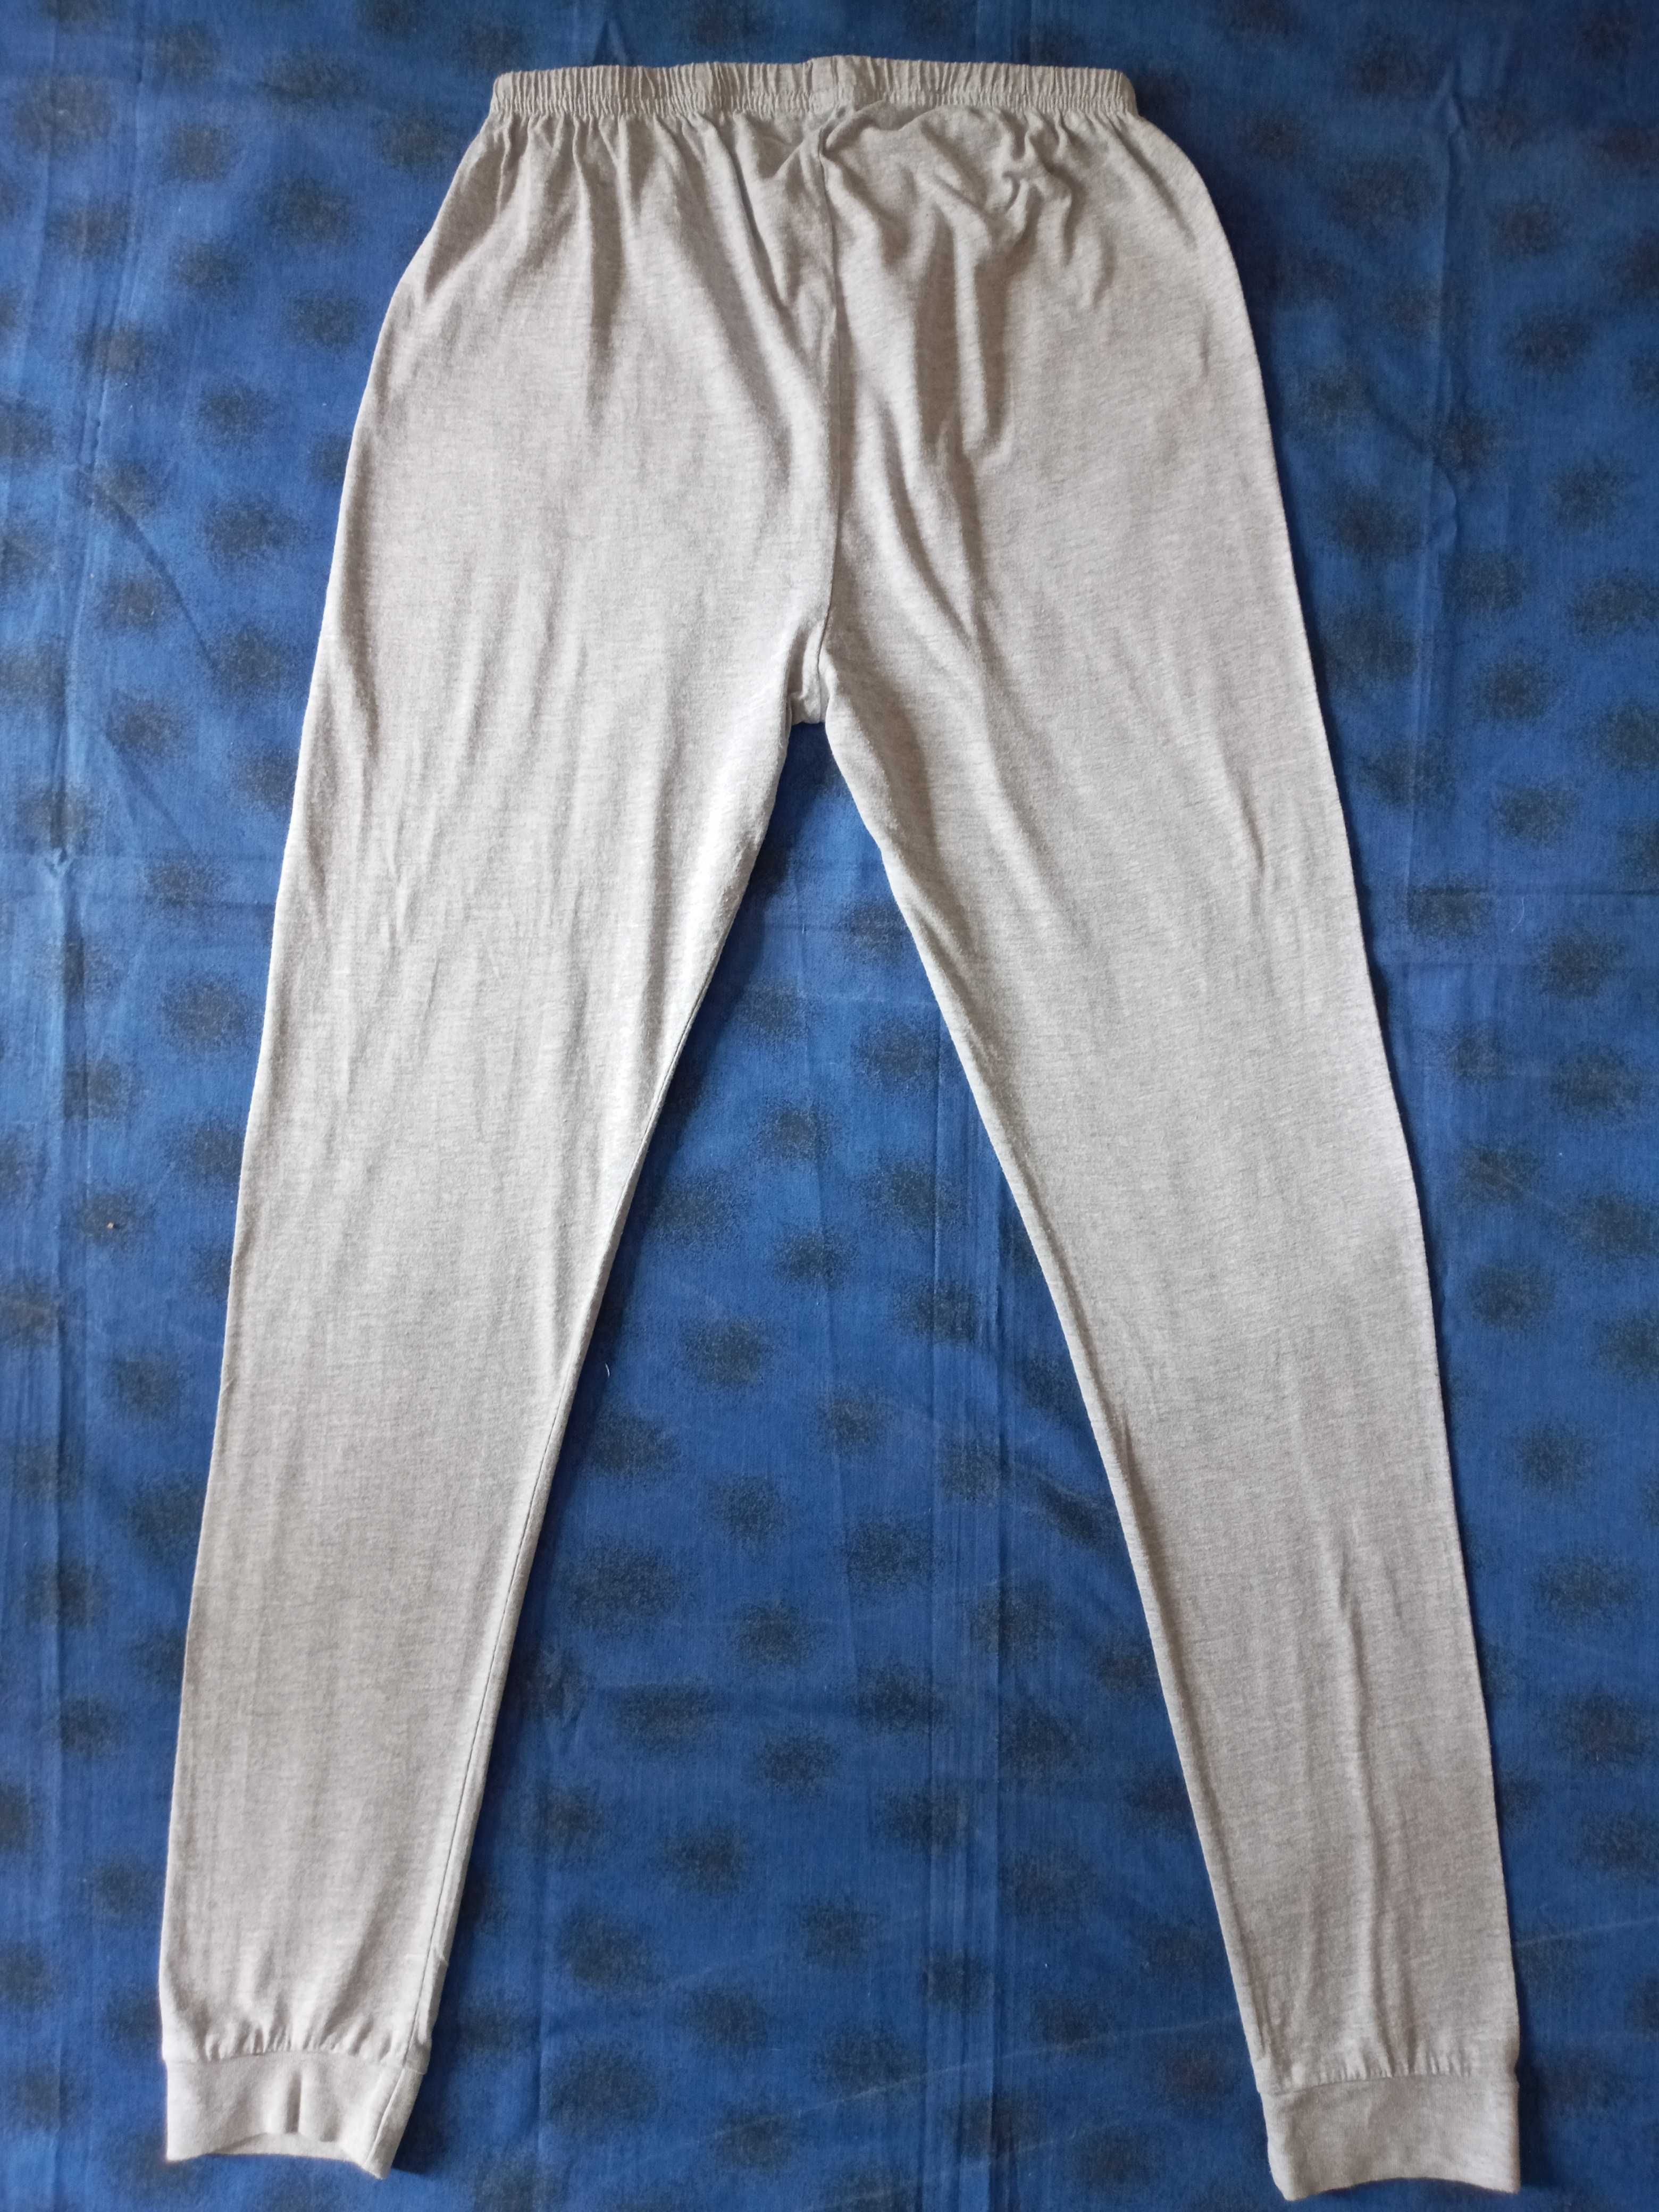 Спортивные штаны/подштаники Star Wars, на рост 134-140см.(9-10лет)